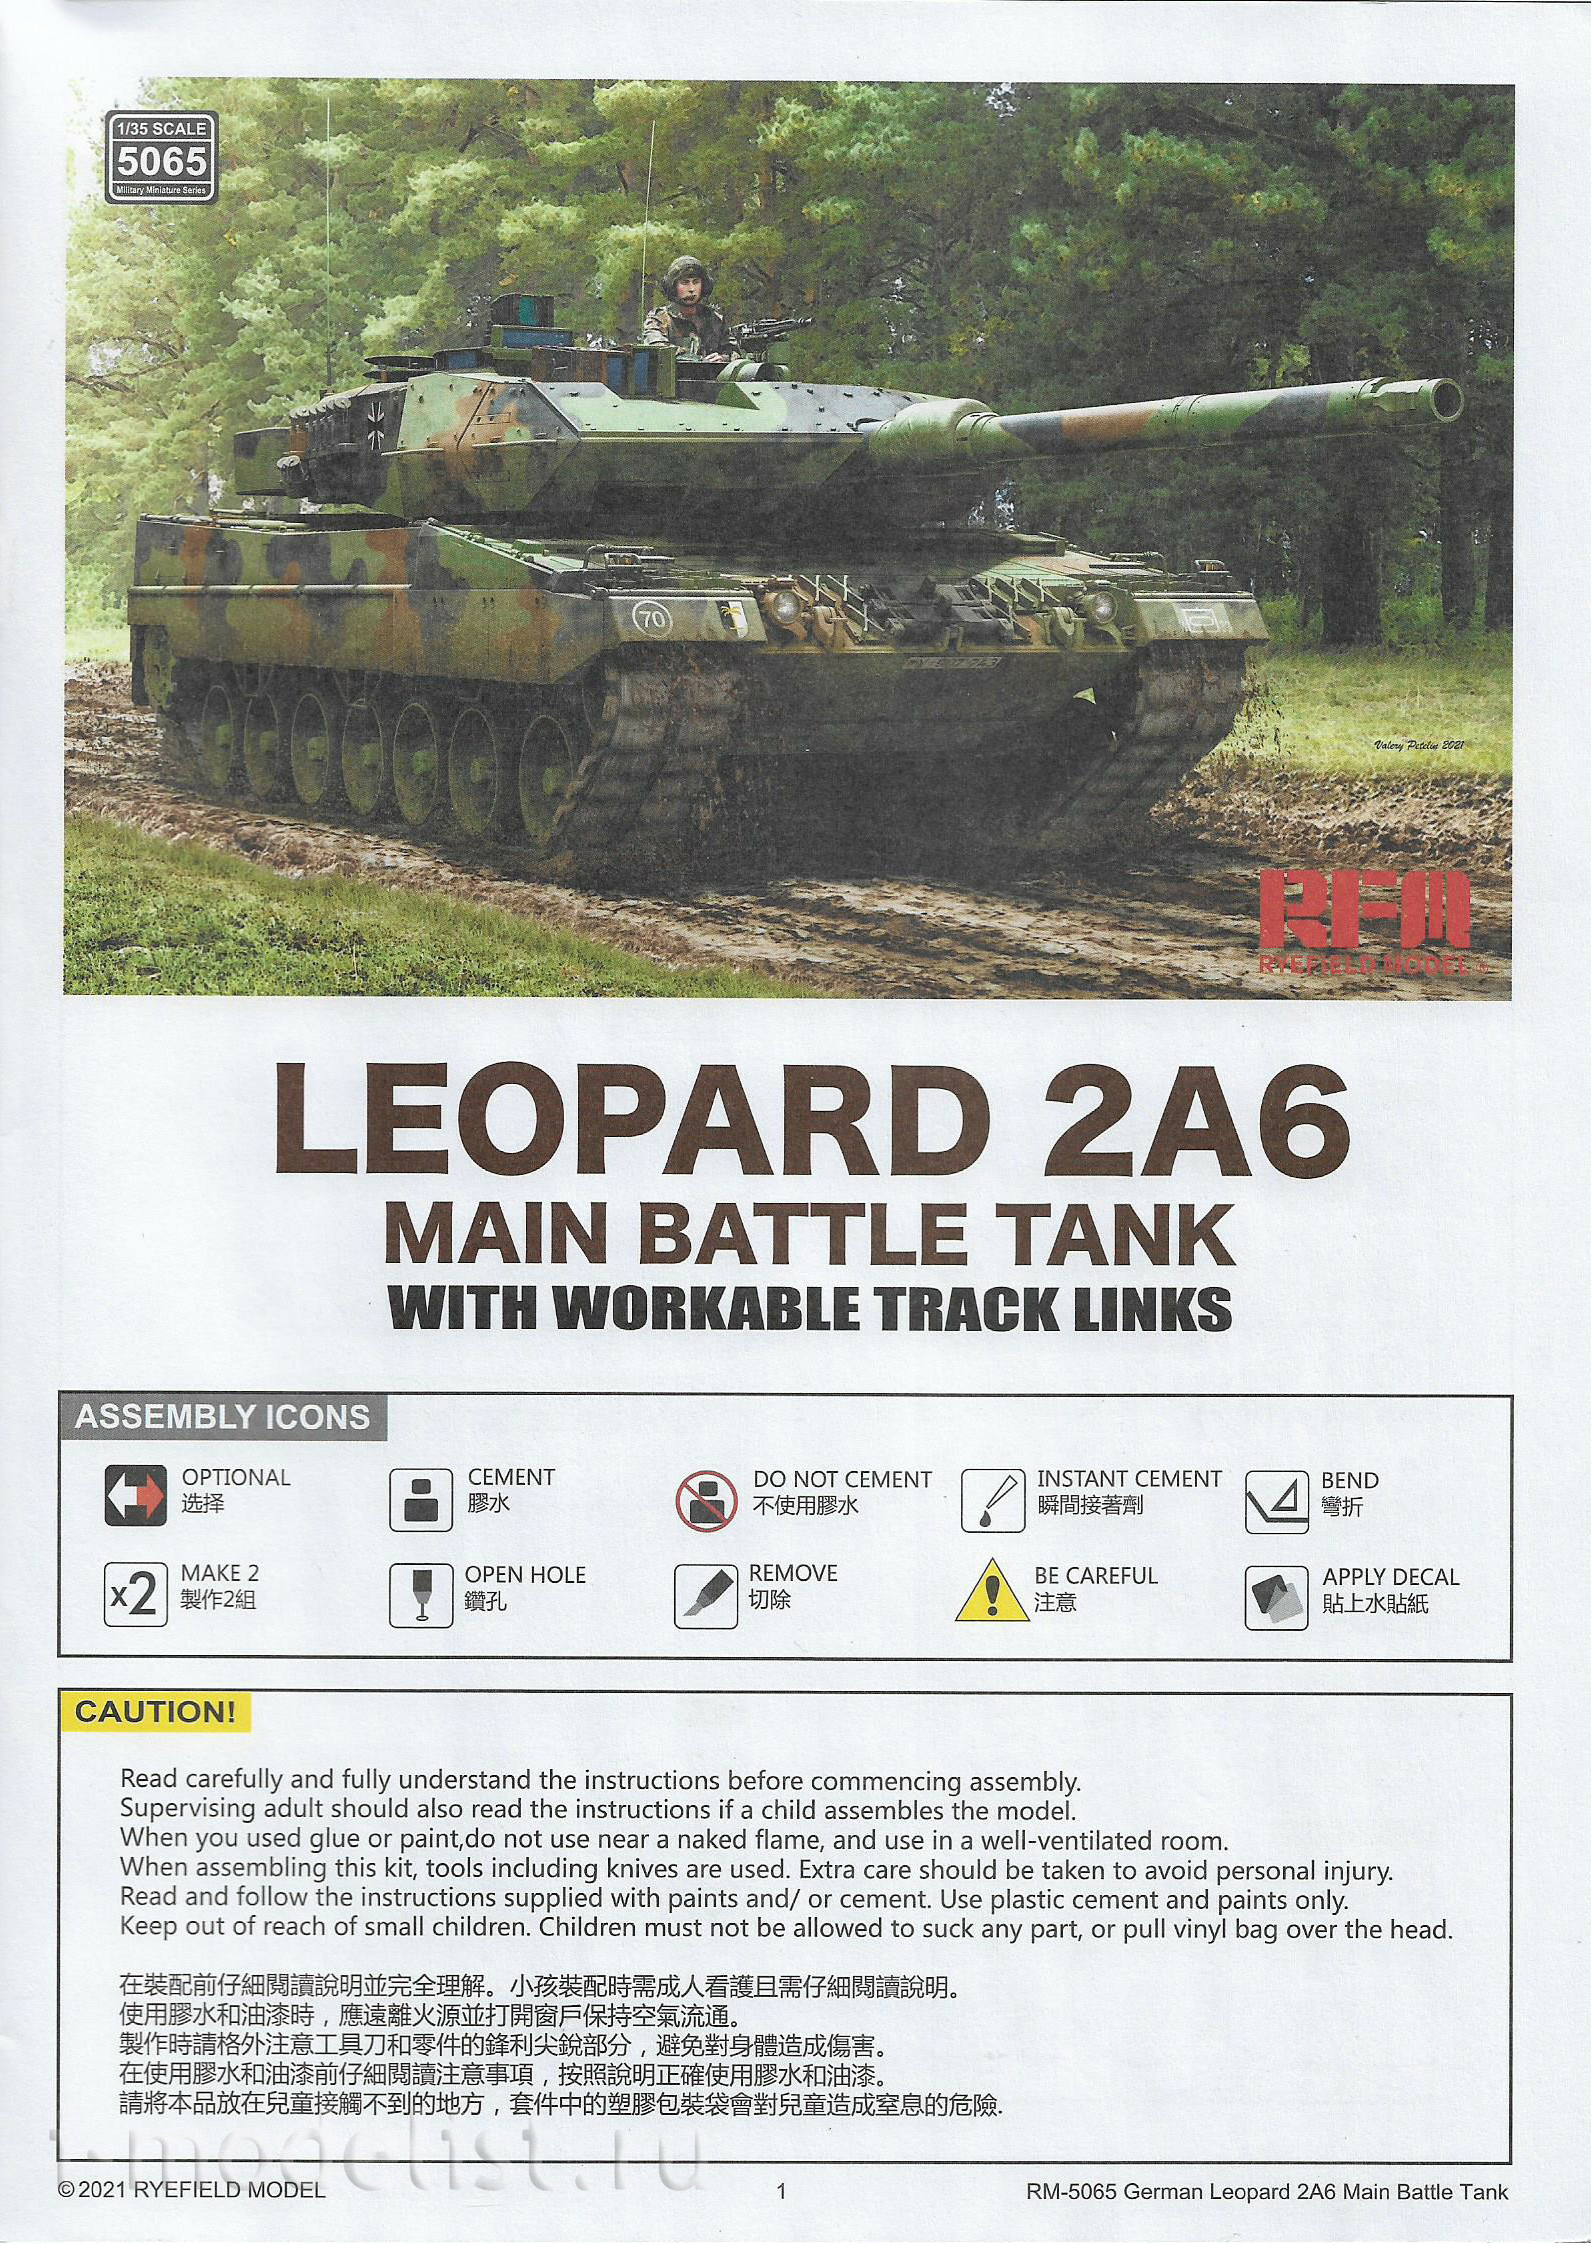 RM-5065 Rye Field Model 1/35 Основной боевой танк Leopard 2A6 с рабочими траками